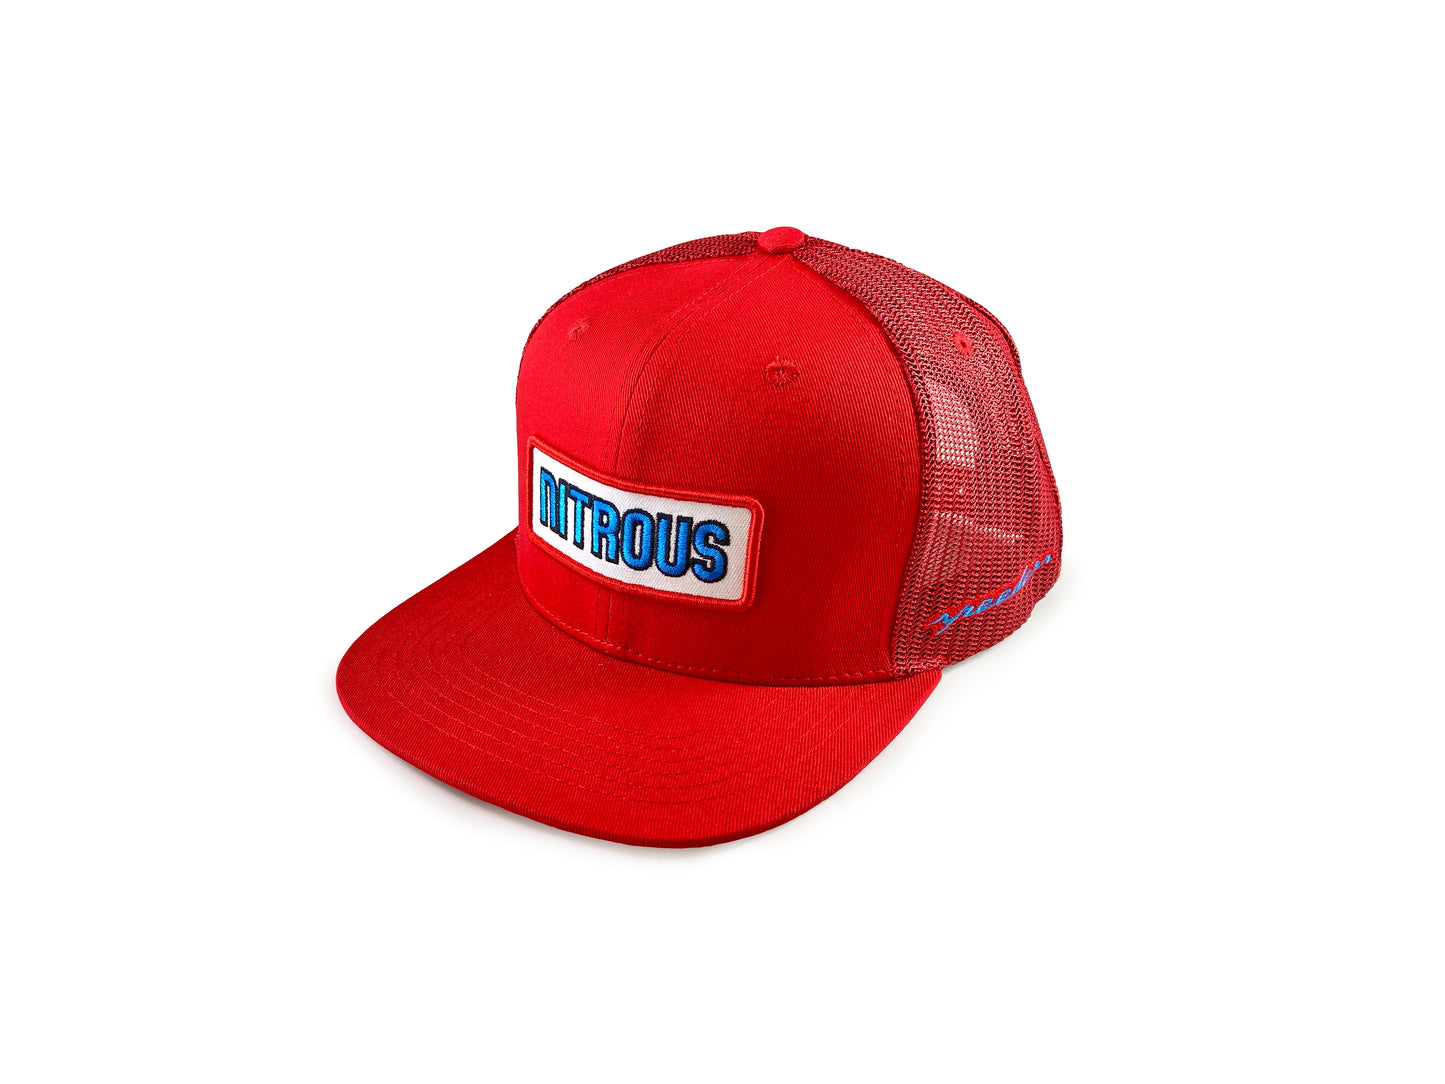 "Nitrous" Red Flat Bill Snapback Trucker Hat